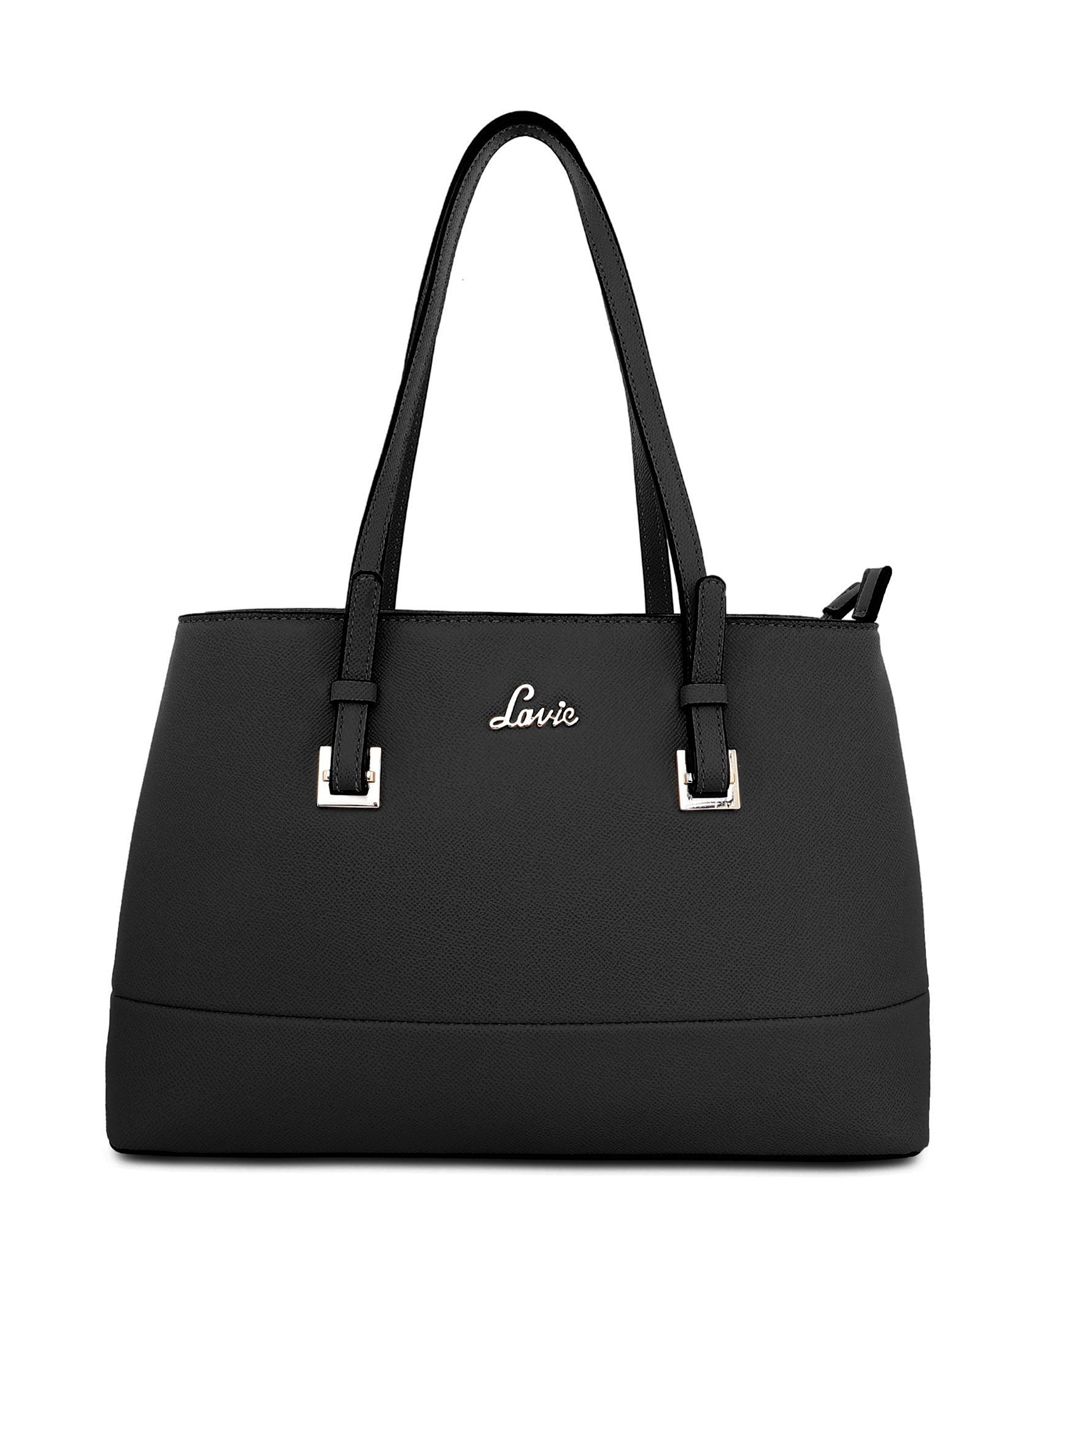 Lavie Black Solid Shoulder Bag Price in India